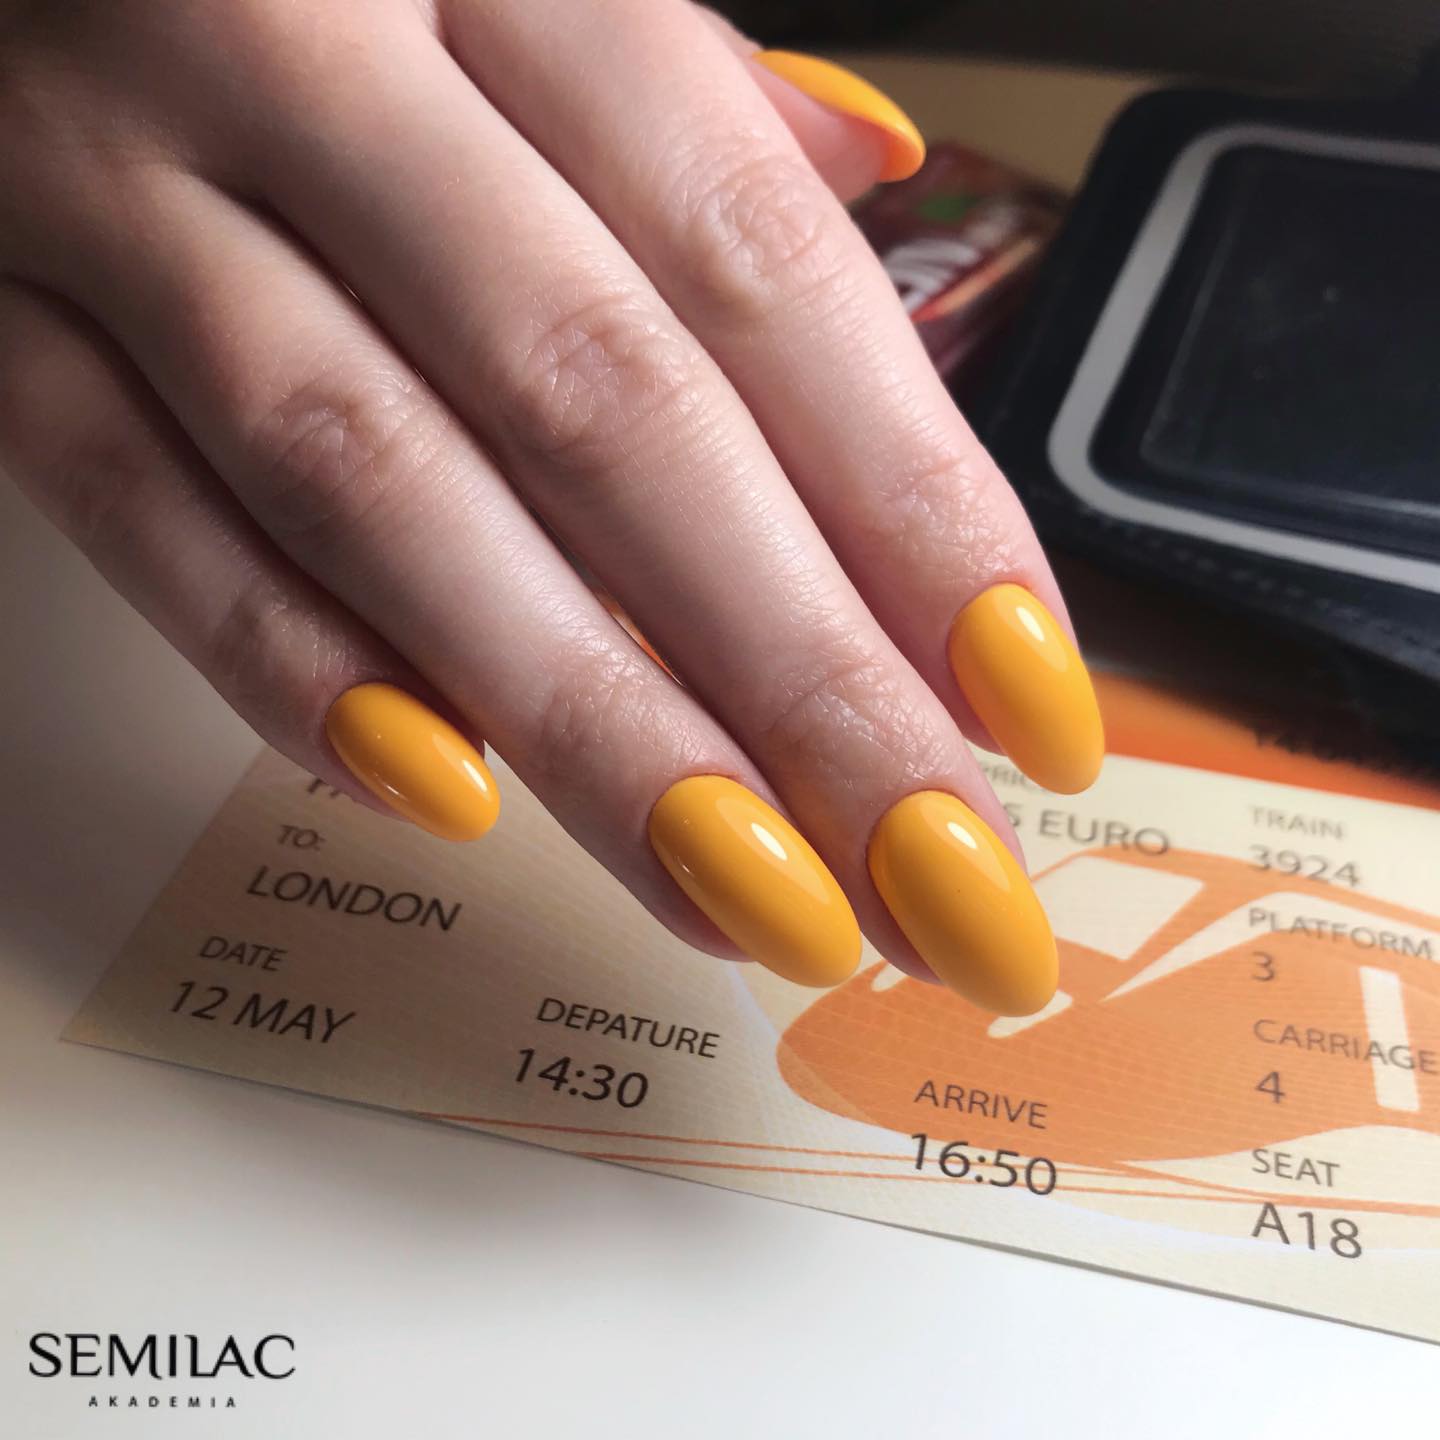 Semilac 362 Go Out With Me UV Gel Polish 7ml - Semilac Shop